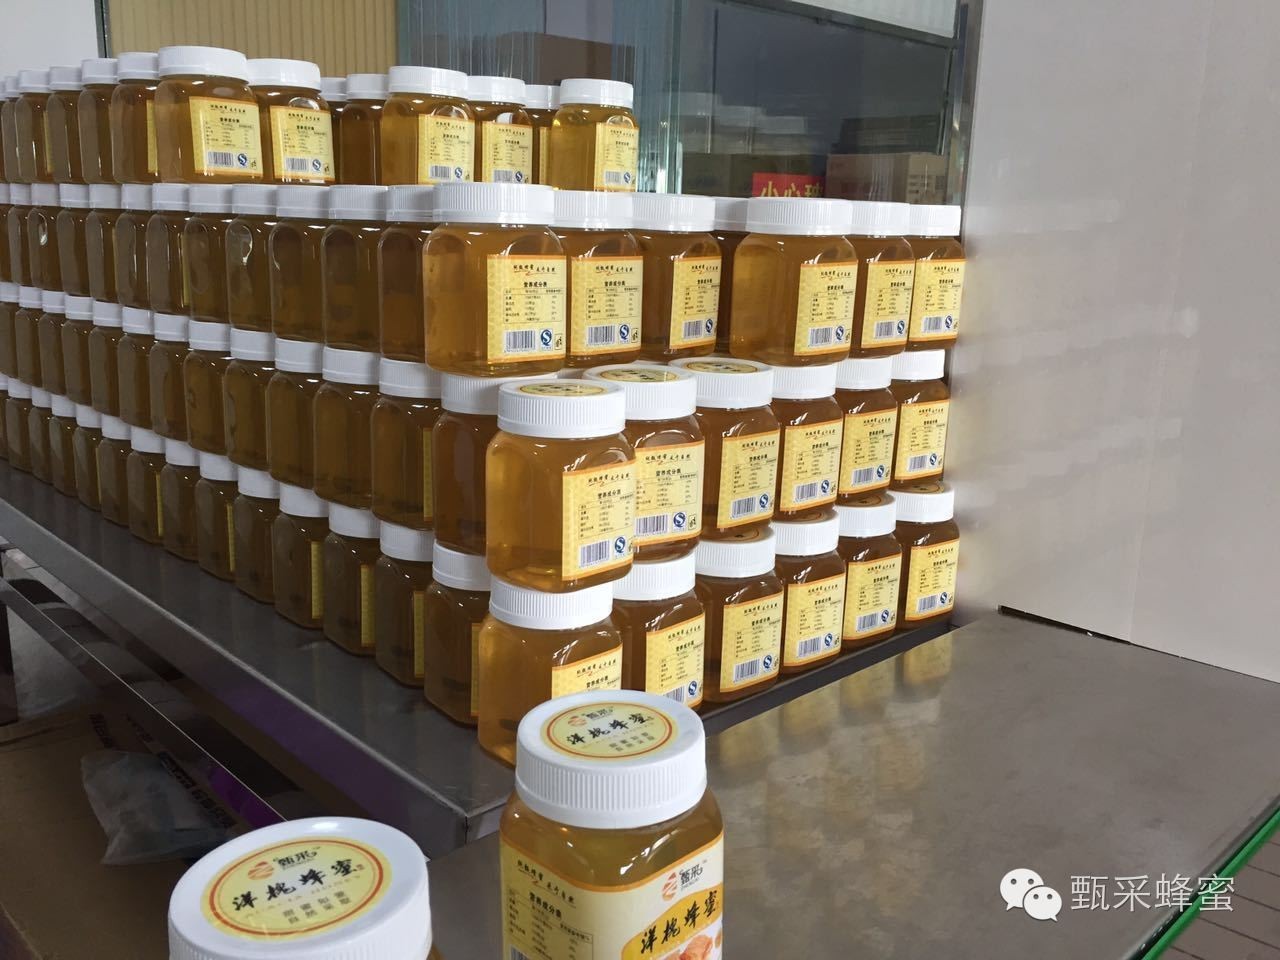 蜂蜜鸡翅 蜂蜜是酸性还是碱性 核桃蜂蜜 蜂蜜作用 蜂蜜香油水治便秘